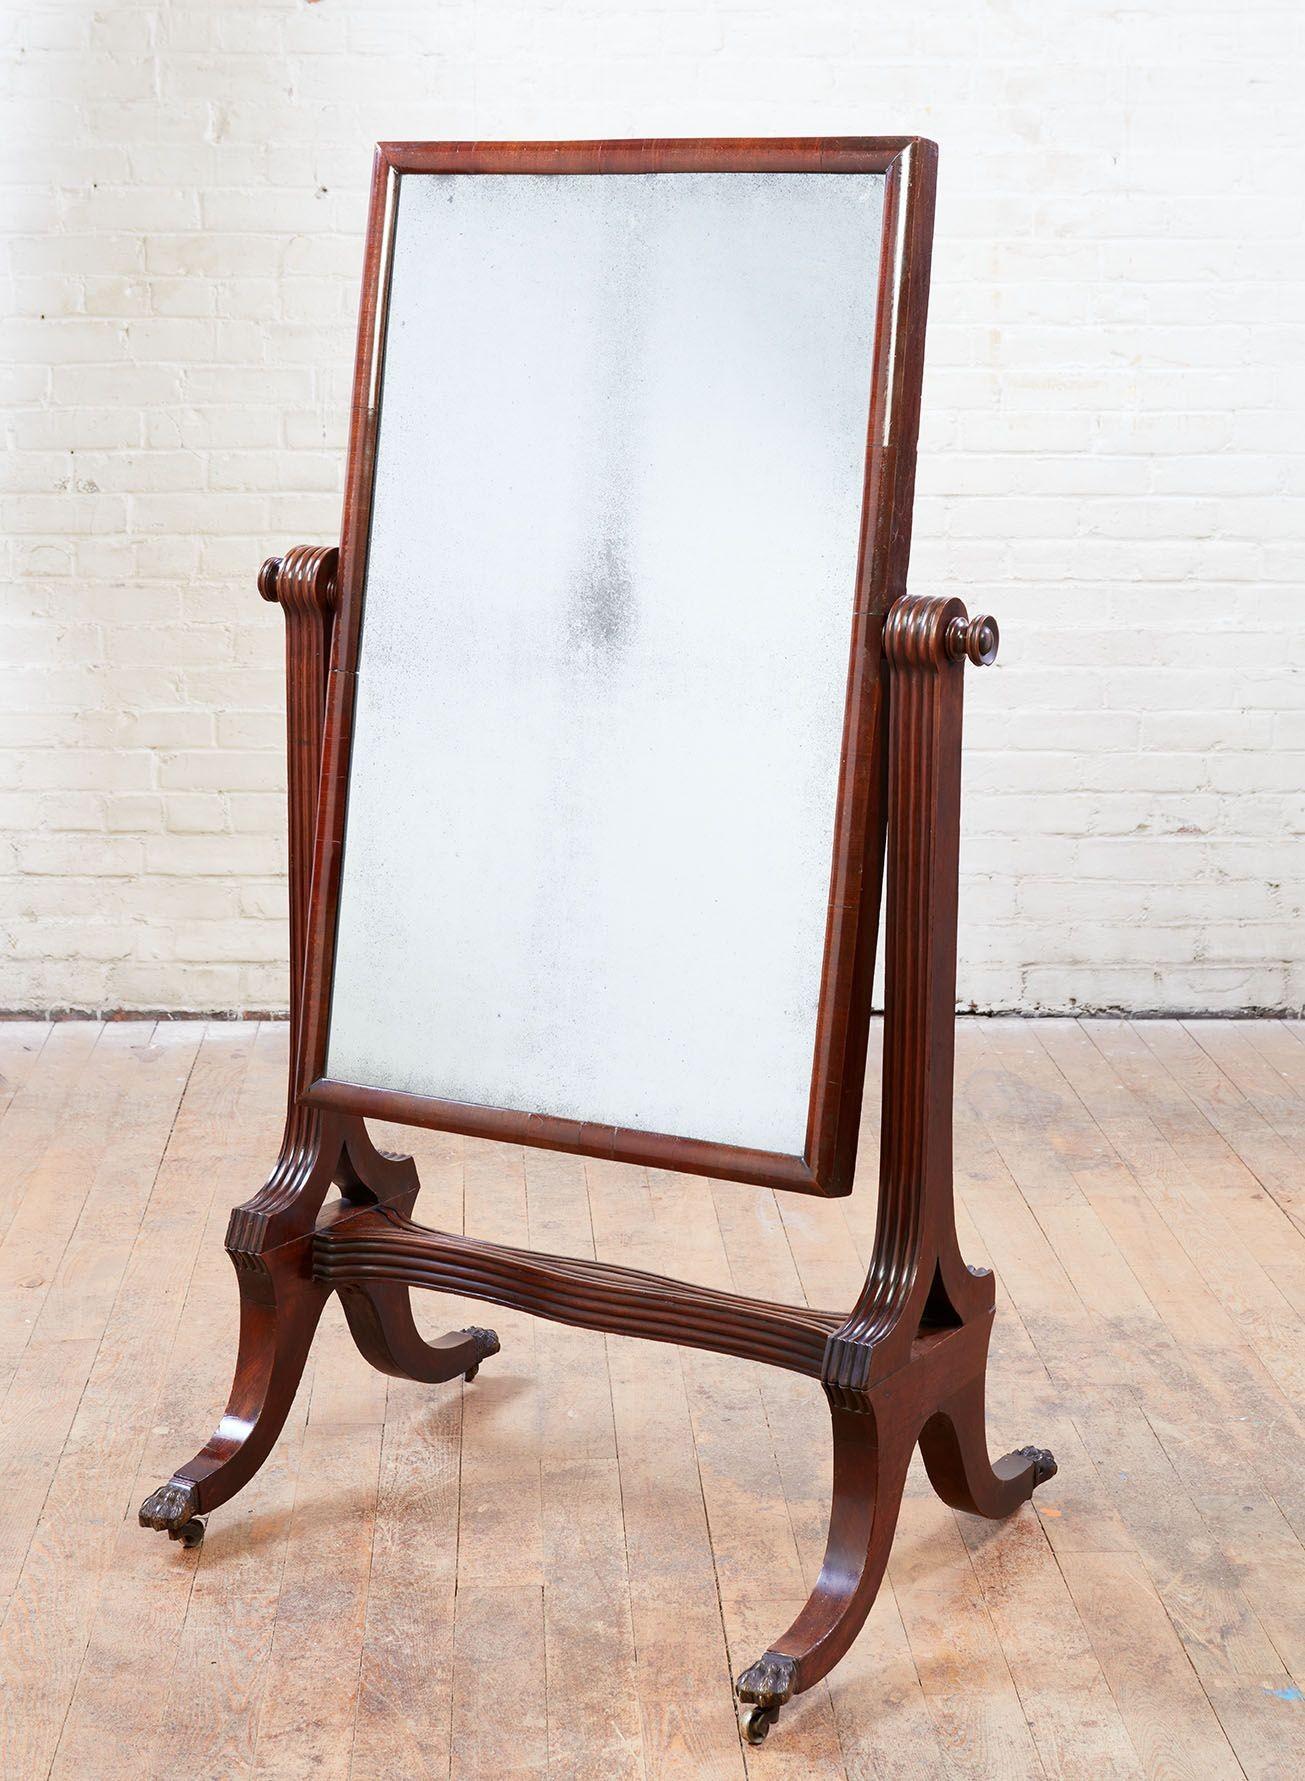 Feine englische frühen 19. Jahrhundert Mahagoni Cheval Spiegel, die ursprüngliche Quecksilber-Glasplatte mit halbrunden geformt kreuzförmig Rahmen, von gerippten Stützen aufgehängt und steht auf Säbelbeine enden in Tatze Füße, das Ganze besitzt eine